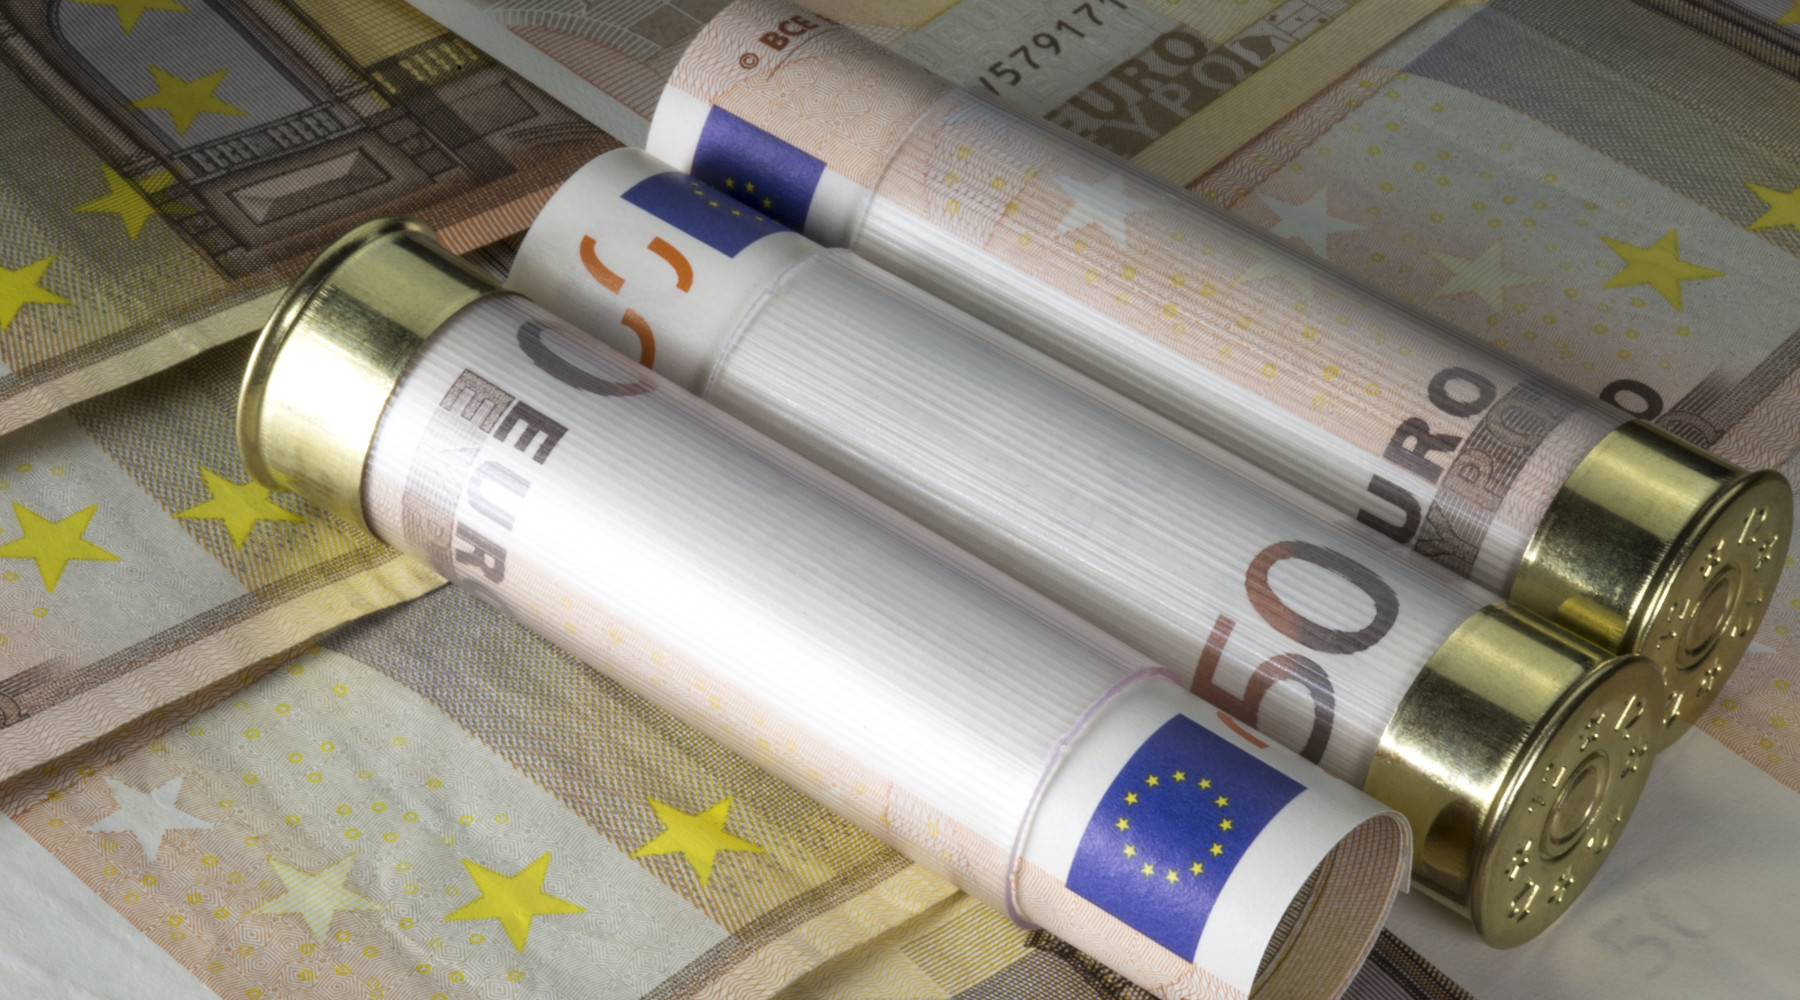 Impatto economico della caccia: banconote da 50 euro in cartucce